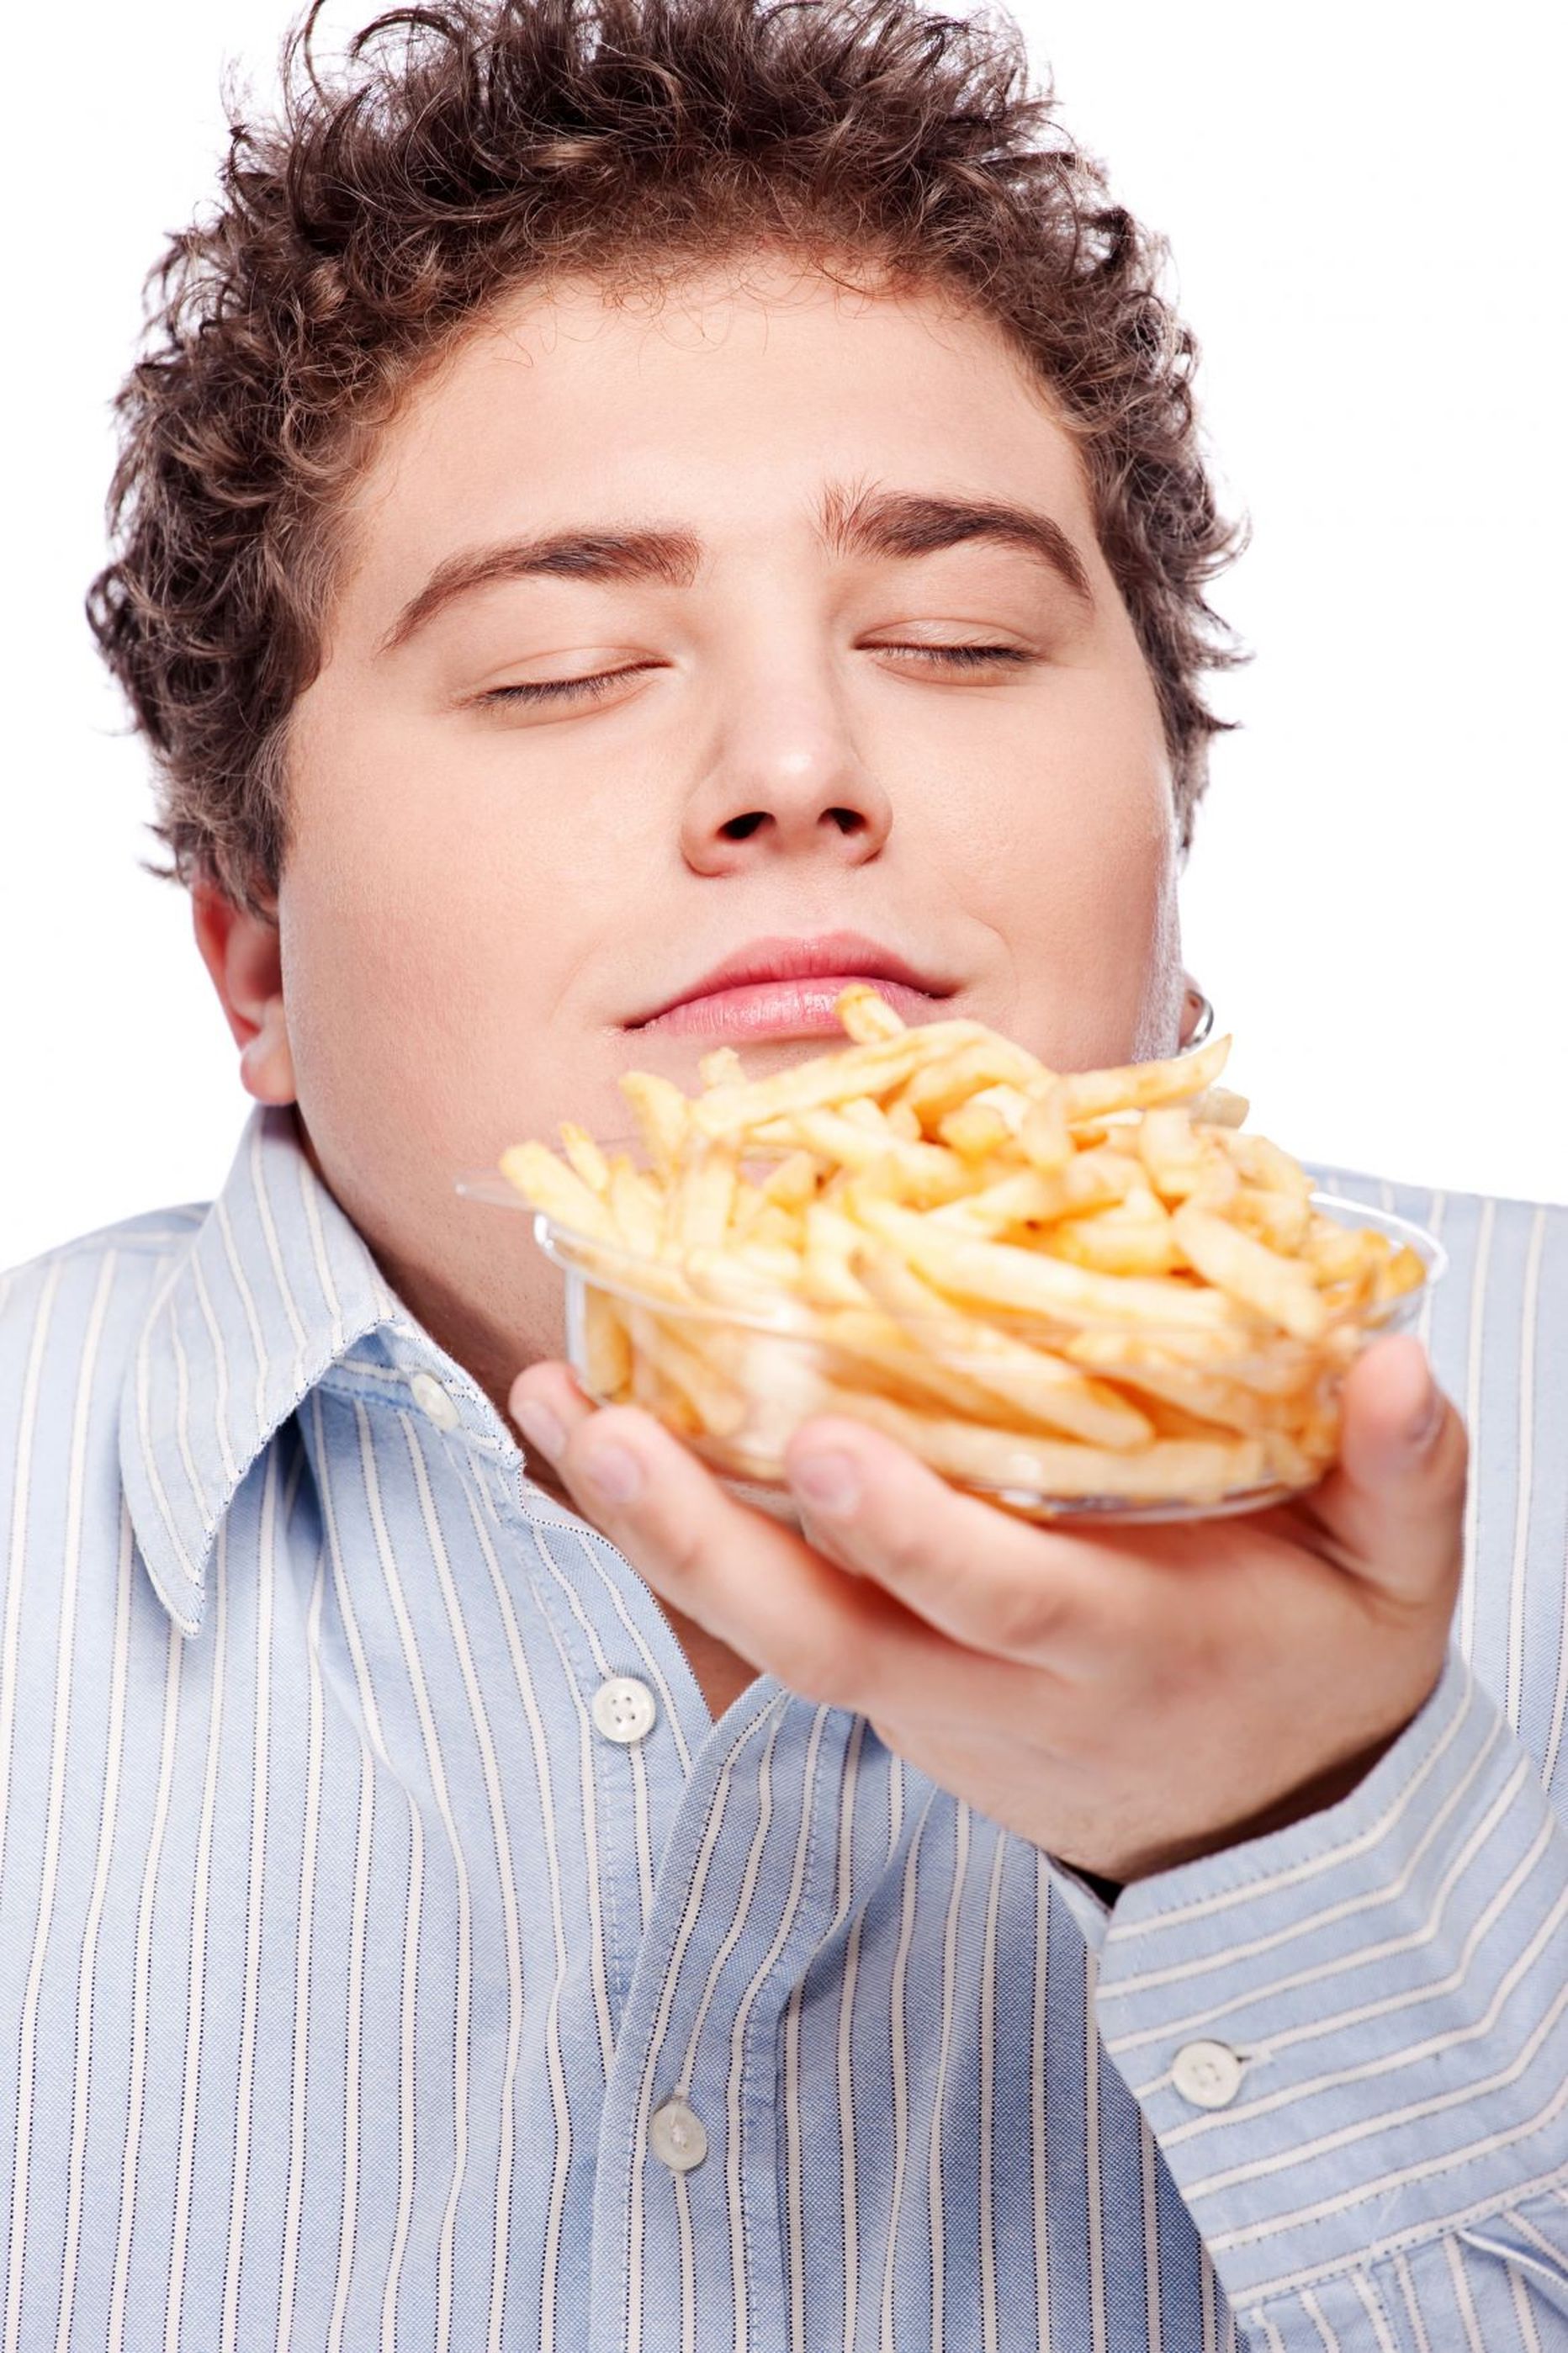 Liigne rämpstoidu söömine võib muuta paksuks.